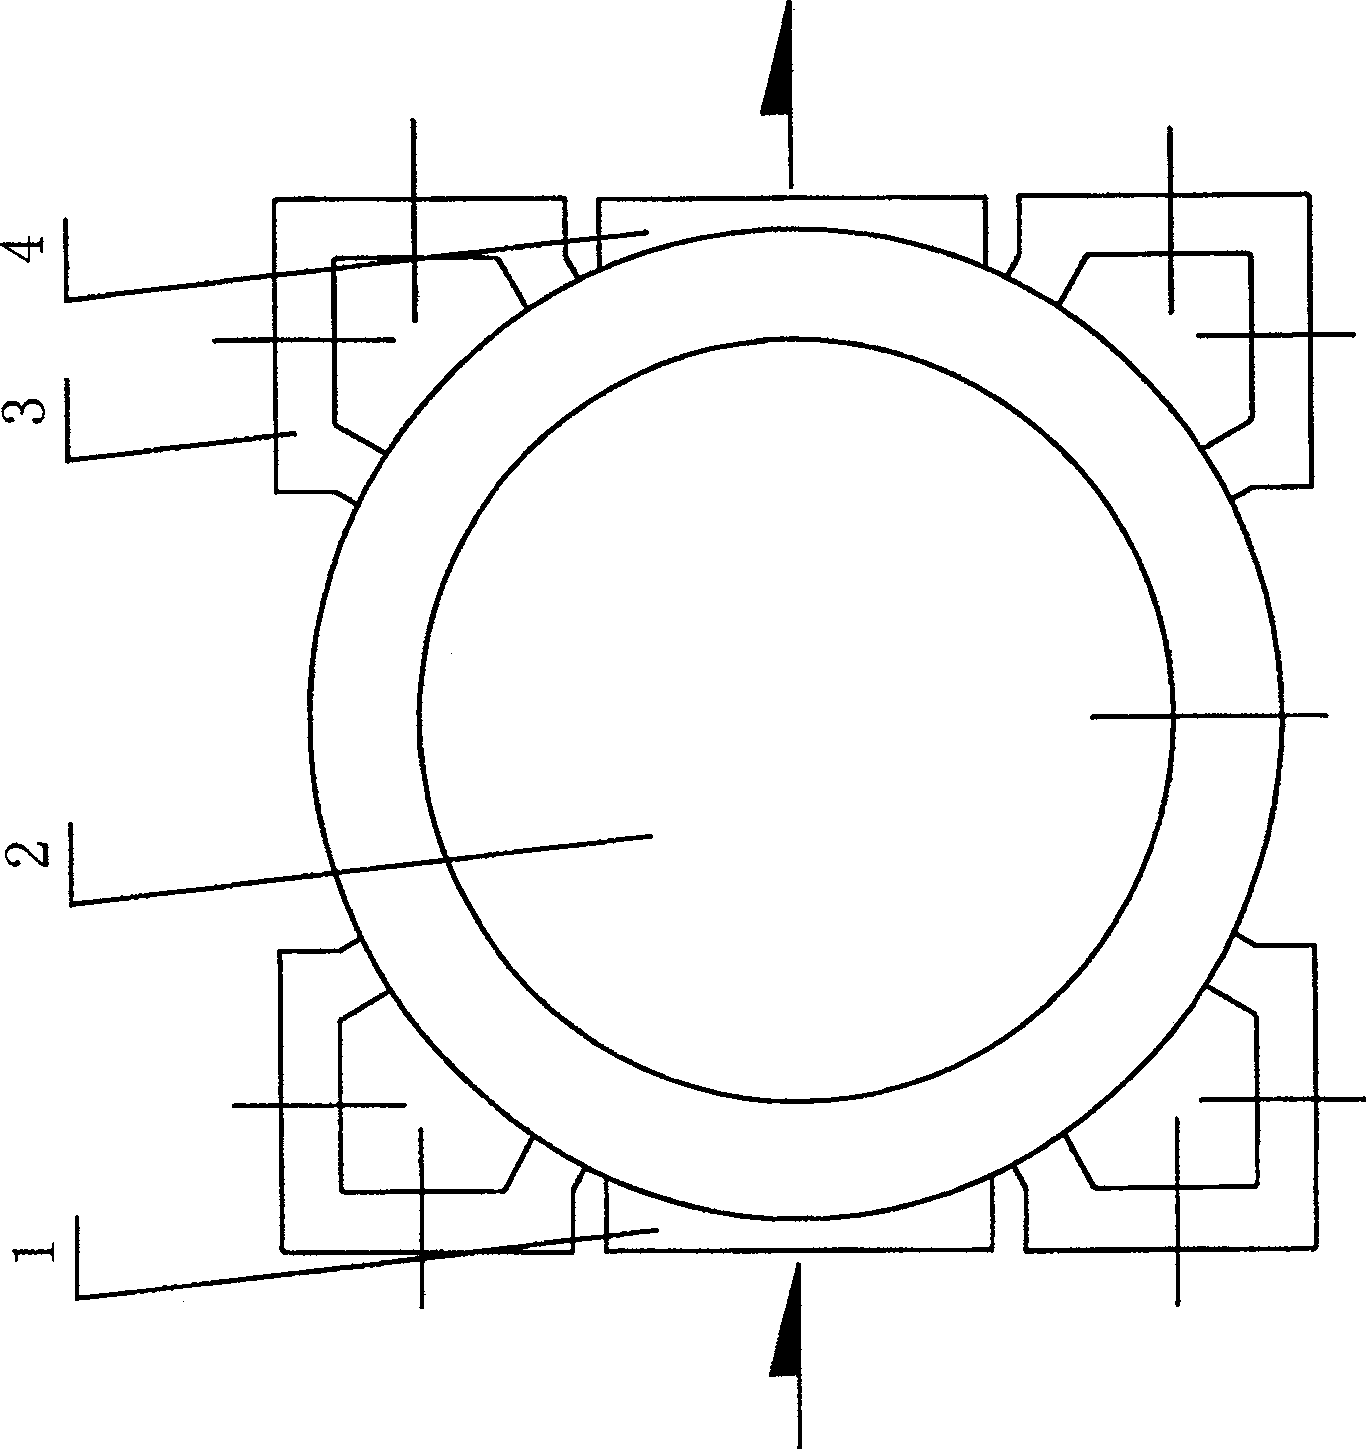 External loop type rotary piston pump